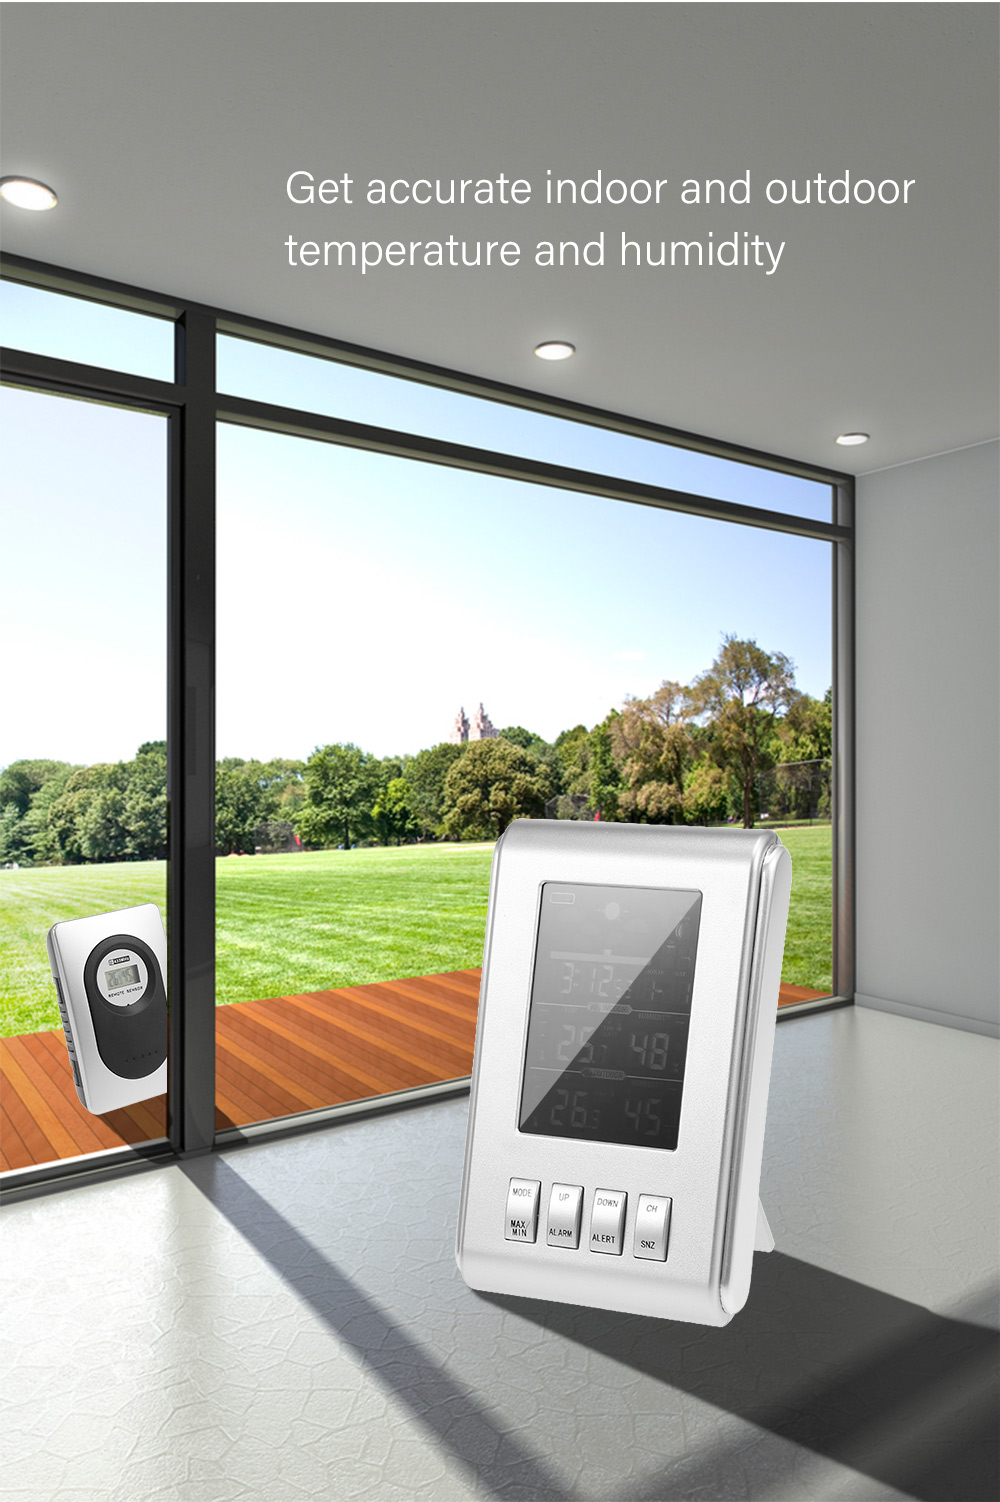 Wireless Weather Station Indoor Outdoor Temperature Humidity Digital Clock